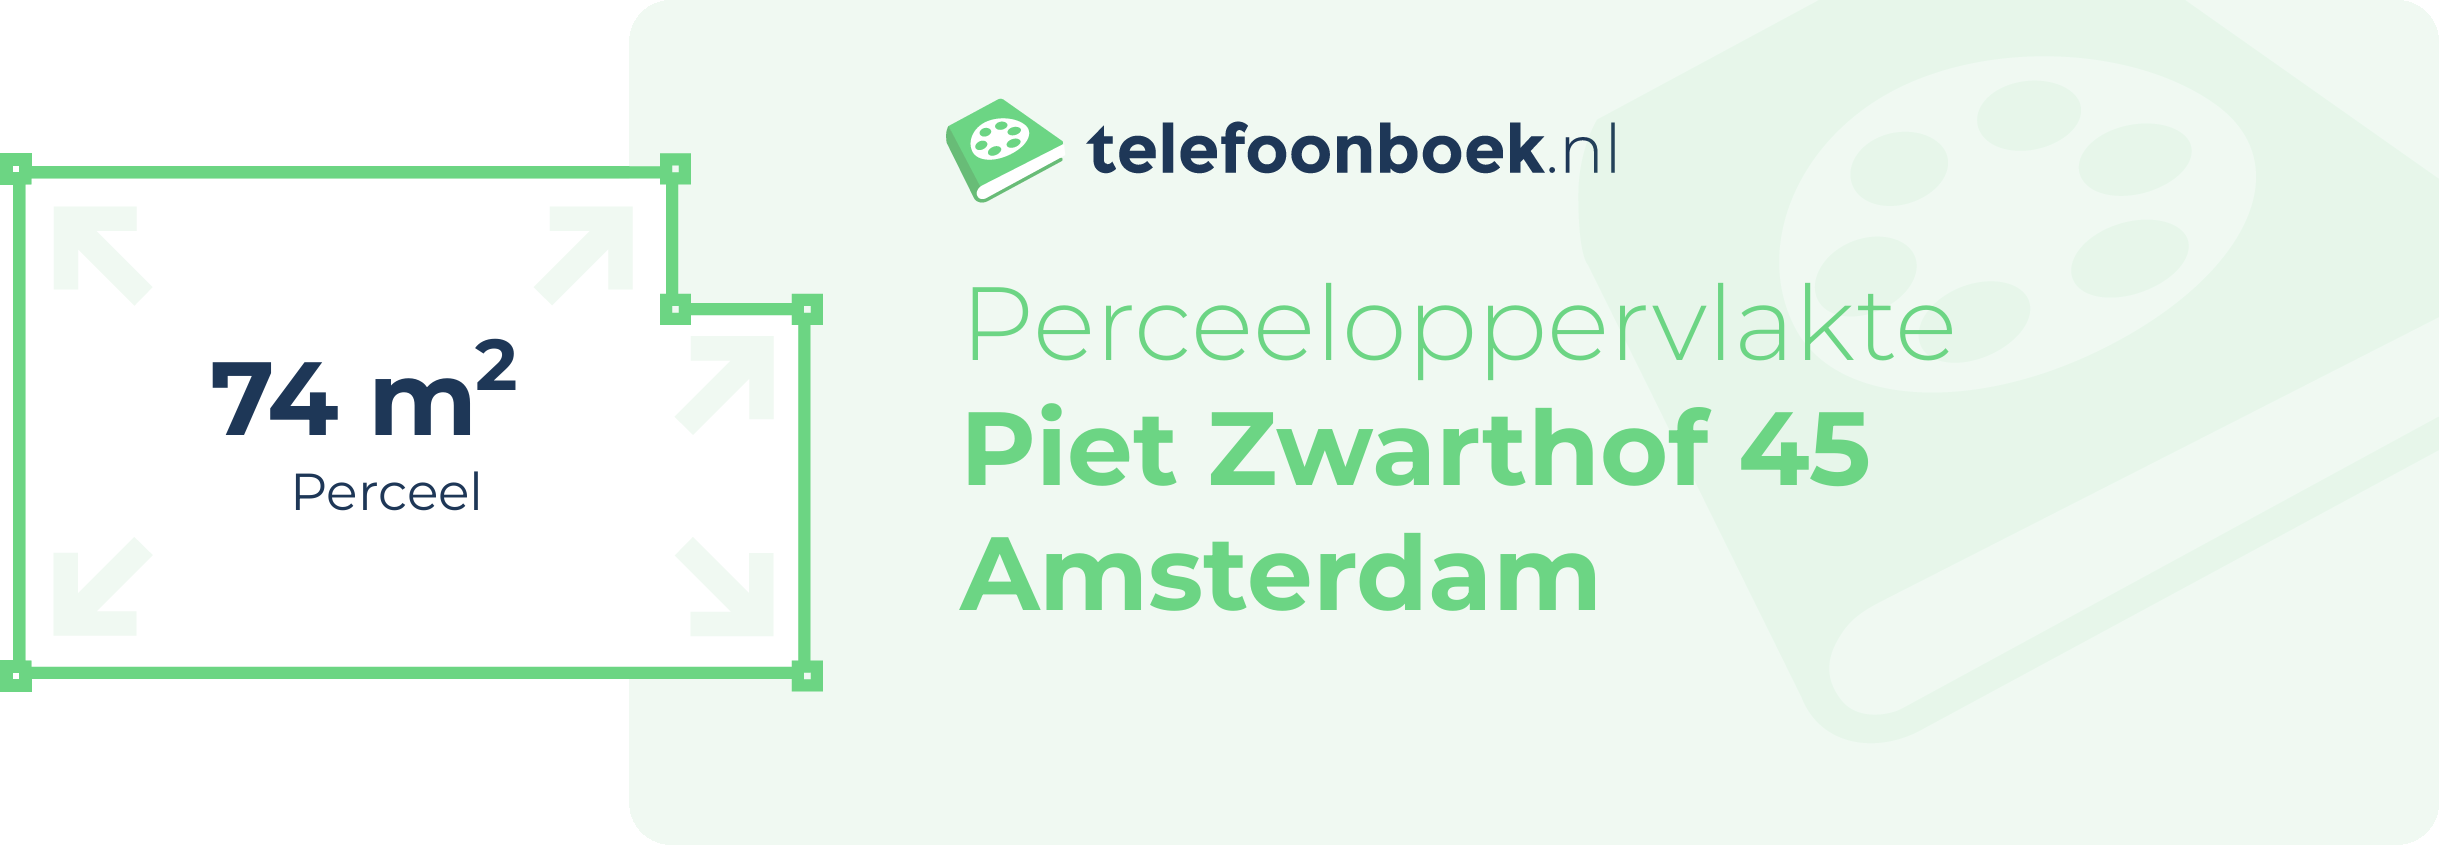 Perceeloppervlakte Piet Zwarthof 45 Amsterdam